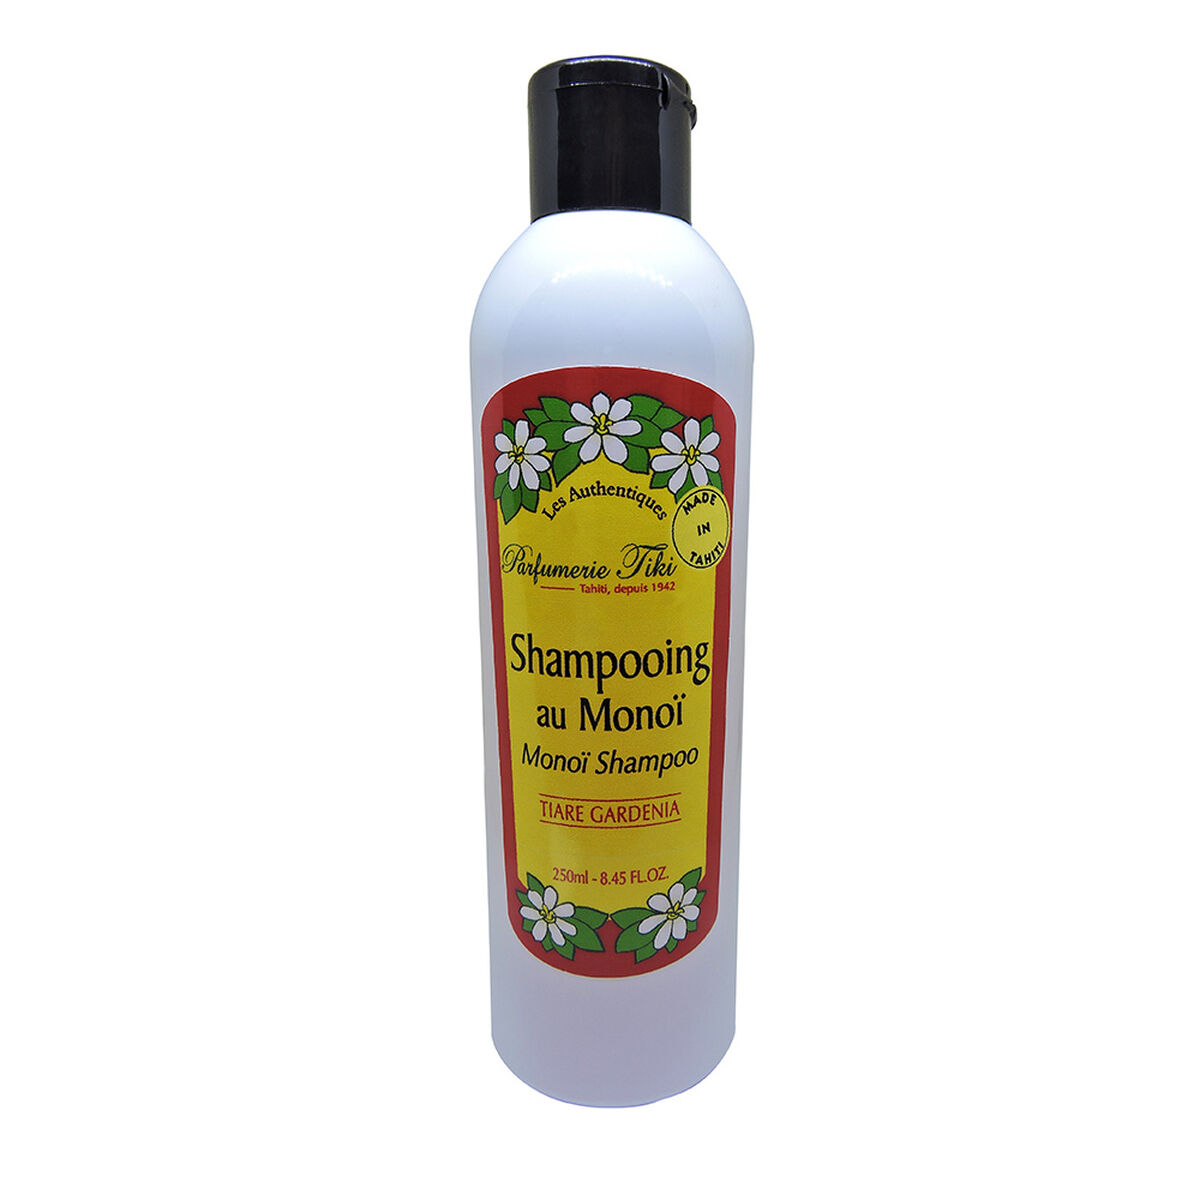 Shampoo Regenerador Monoi Tiki Tahiti Tiare 250 ml